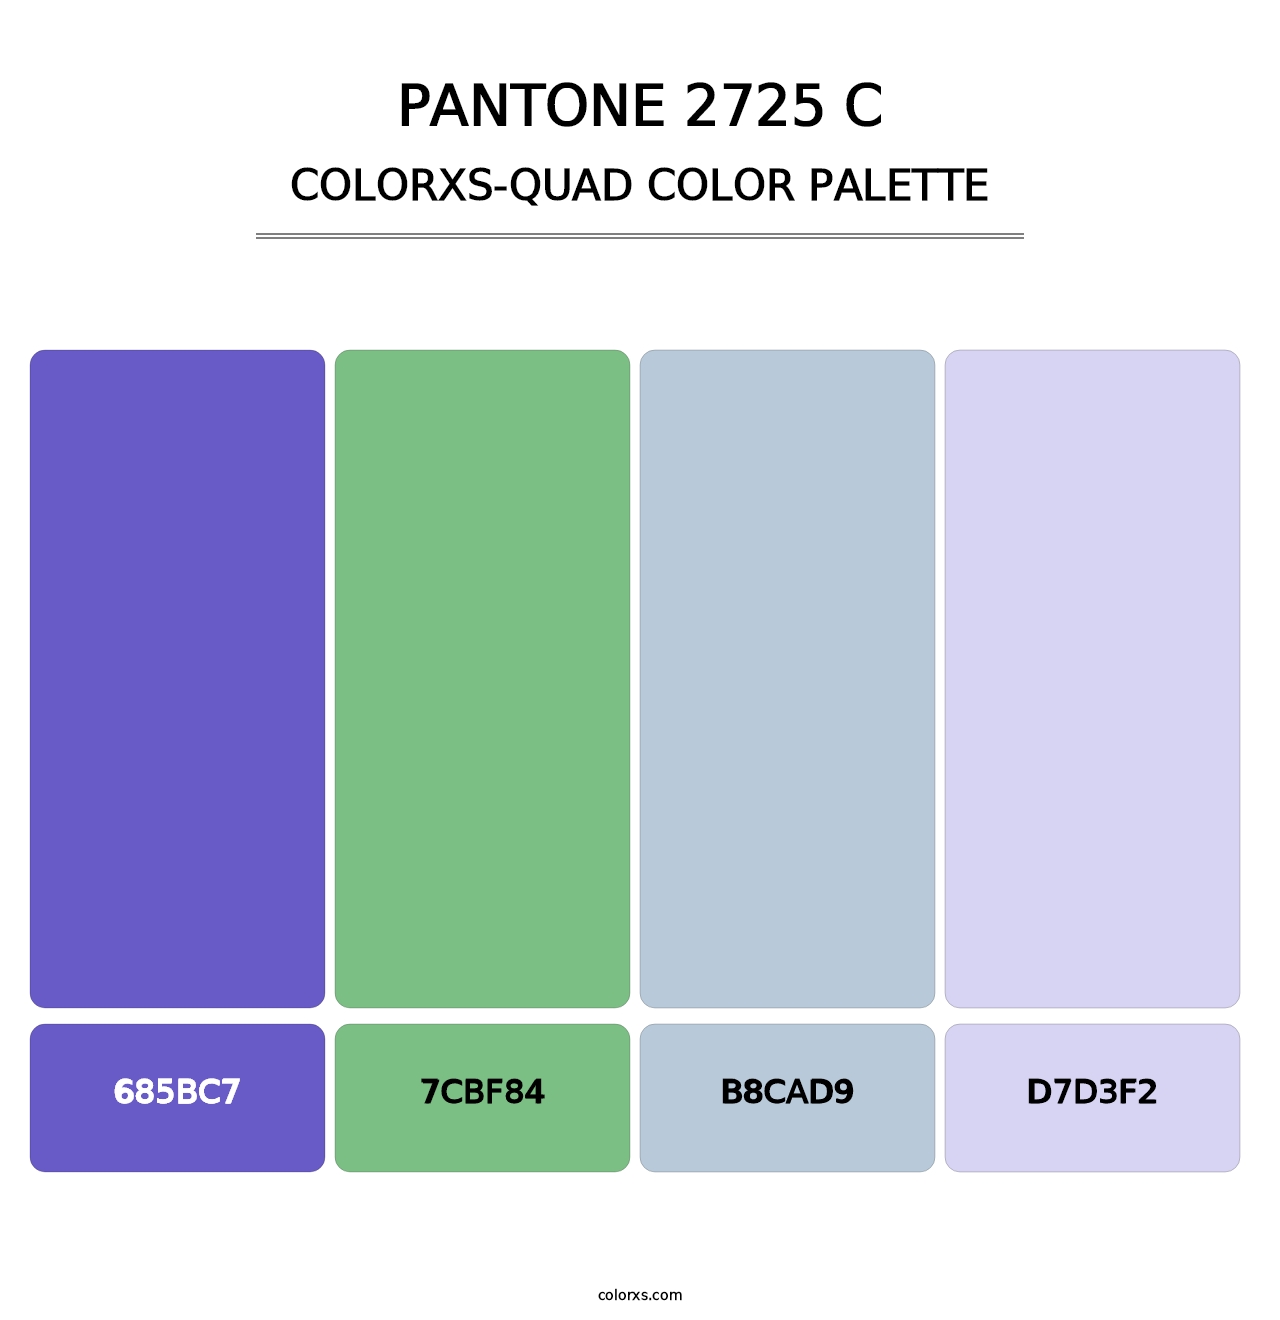 PANTONE 2725 C - Colorxs Quad Palette